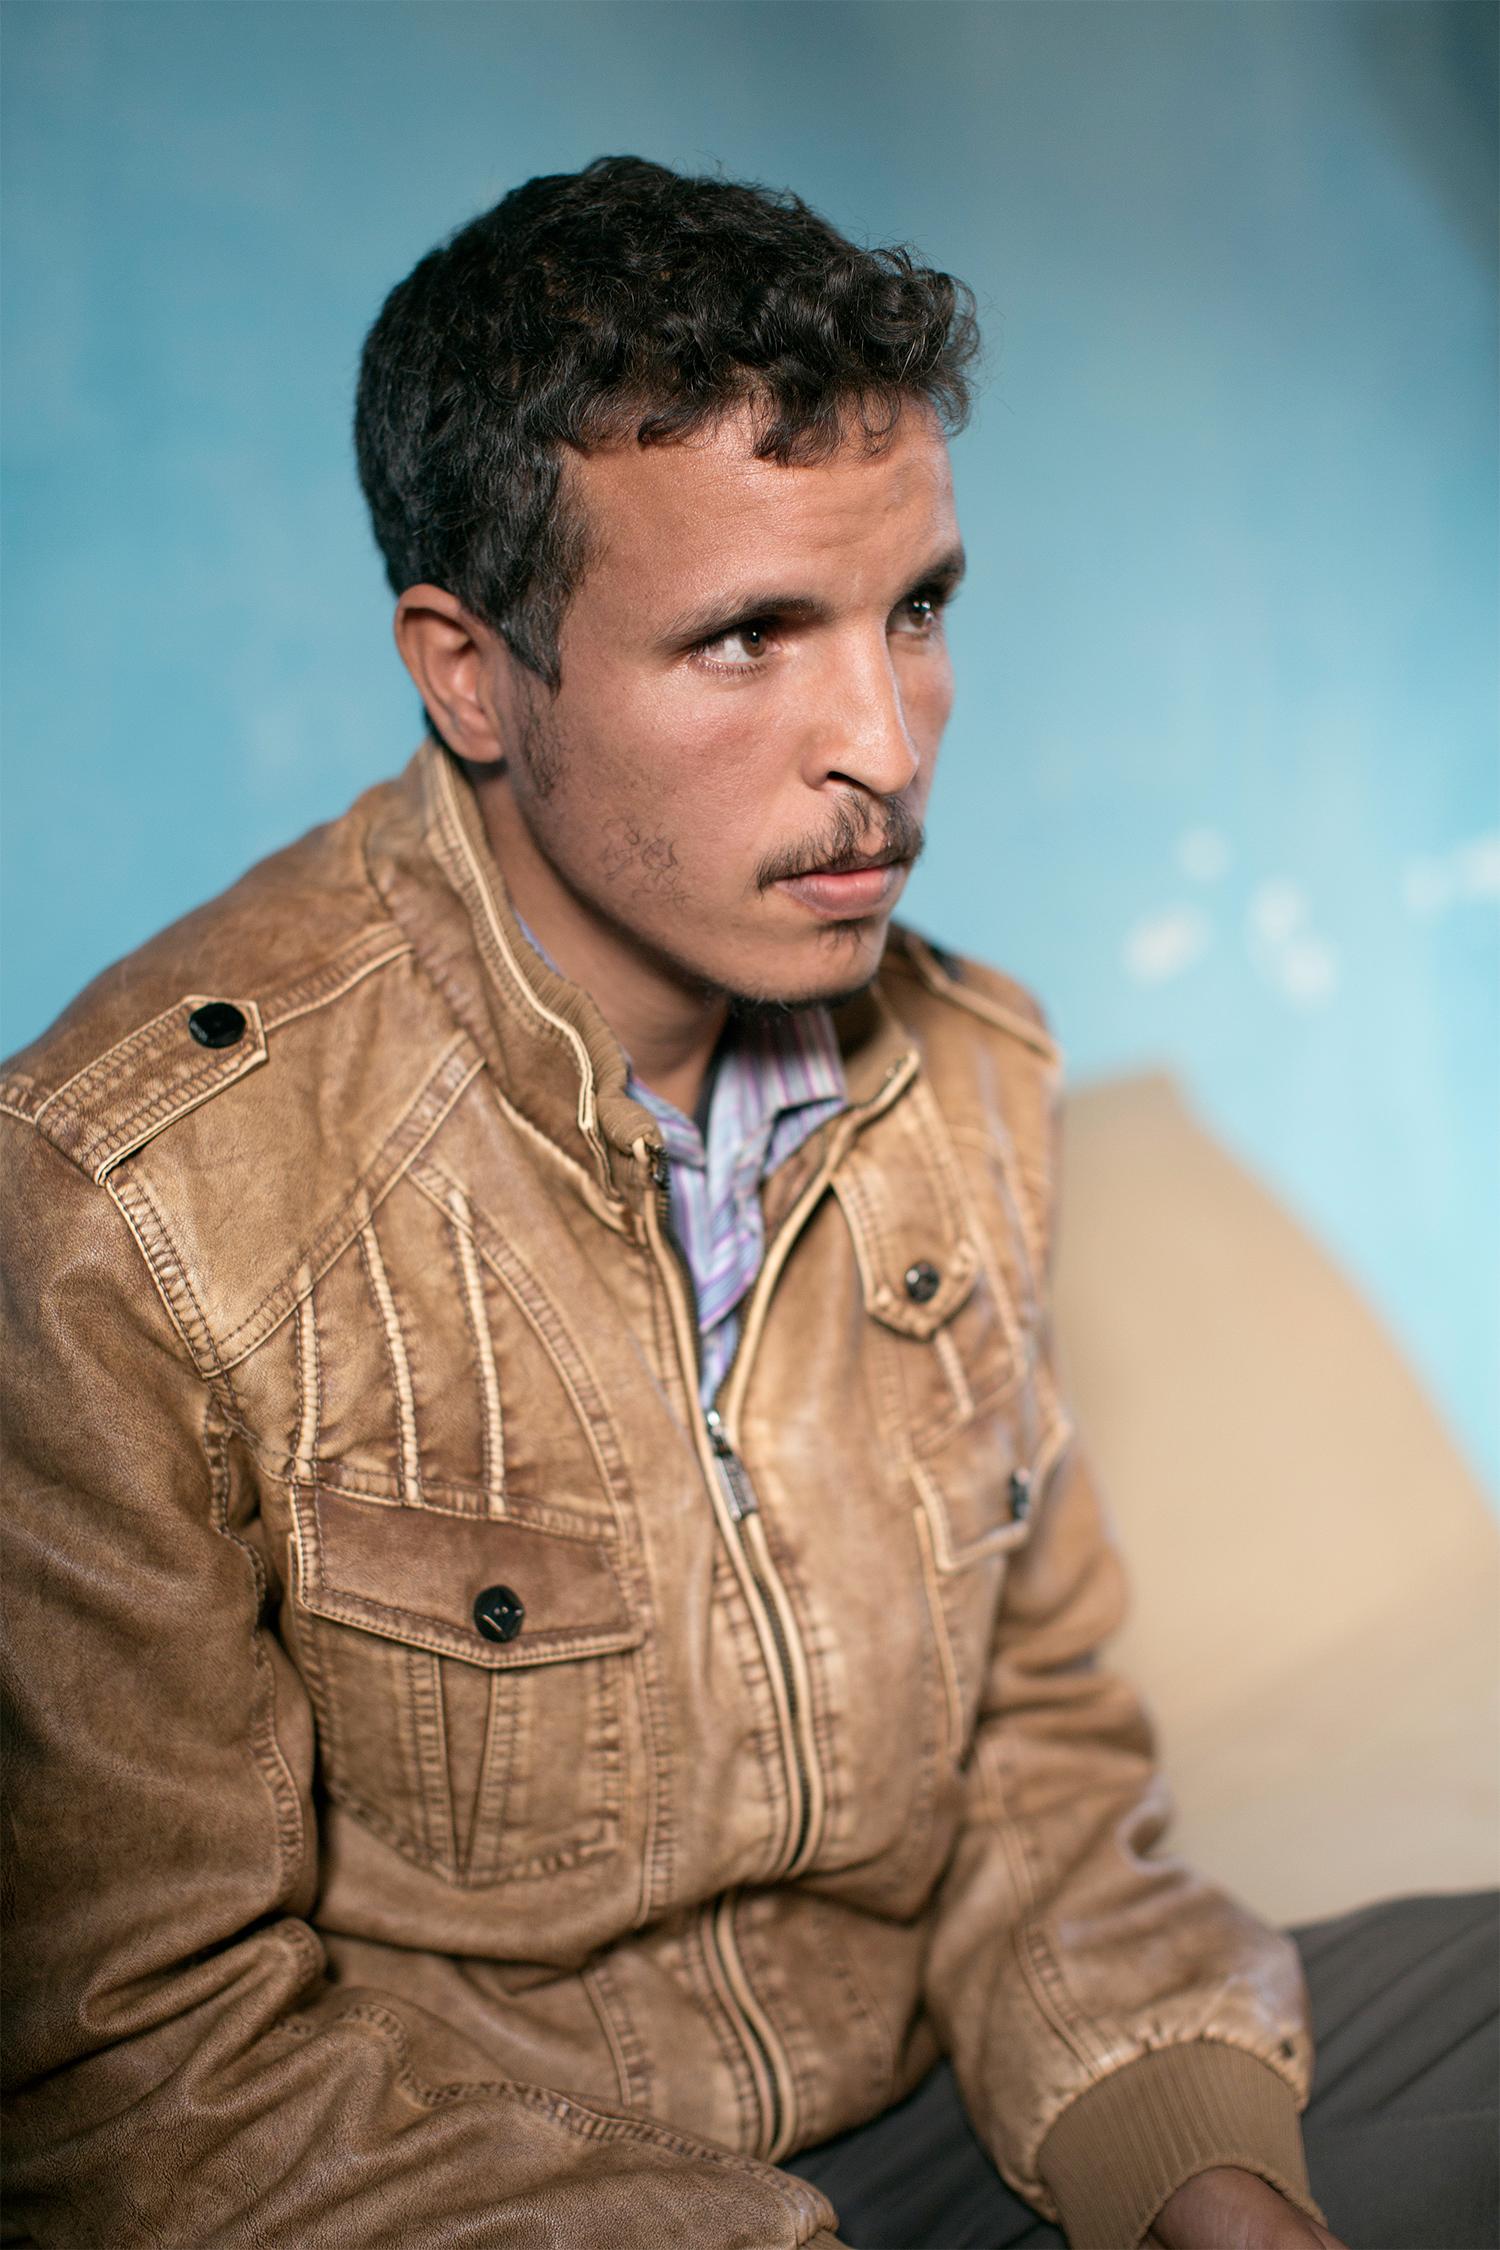 32-årige Hadi Hamadi tillhörde motståndsrörelsen och var eftersökt av den marockanska säkerhetstjänsten när han flydde från Västsahara. Nu lever han i de västsahariska flyktinglägren utanför staden Tindouf i Algeriet. Johan Persson